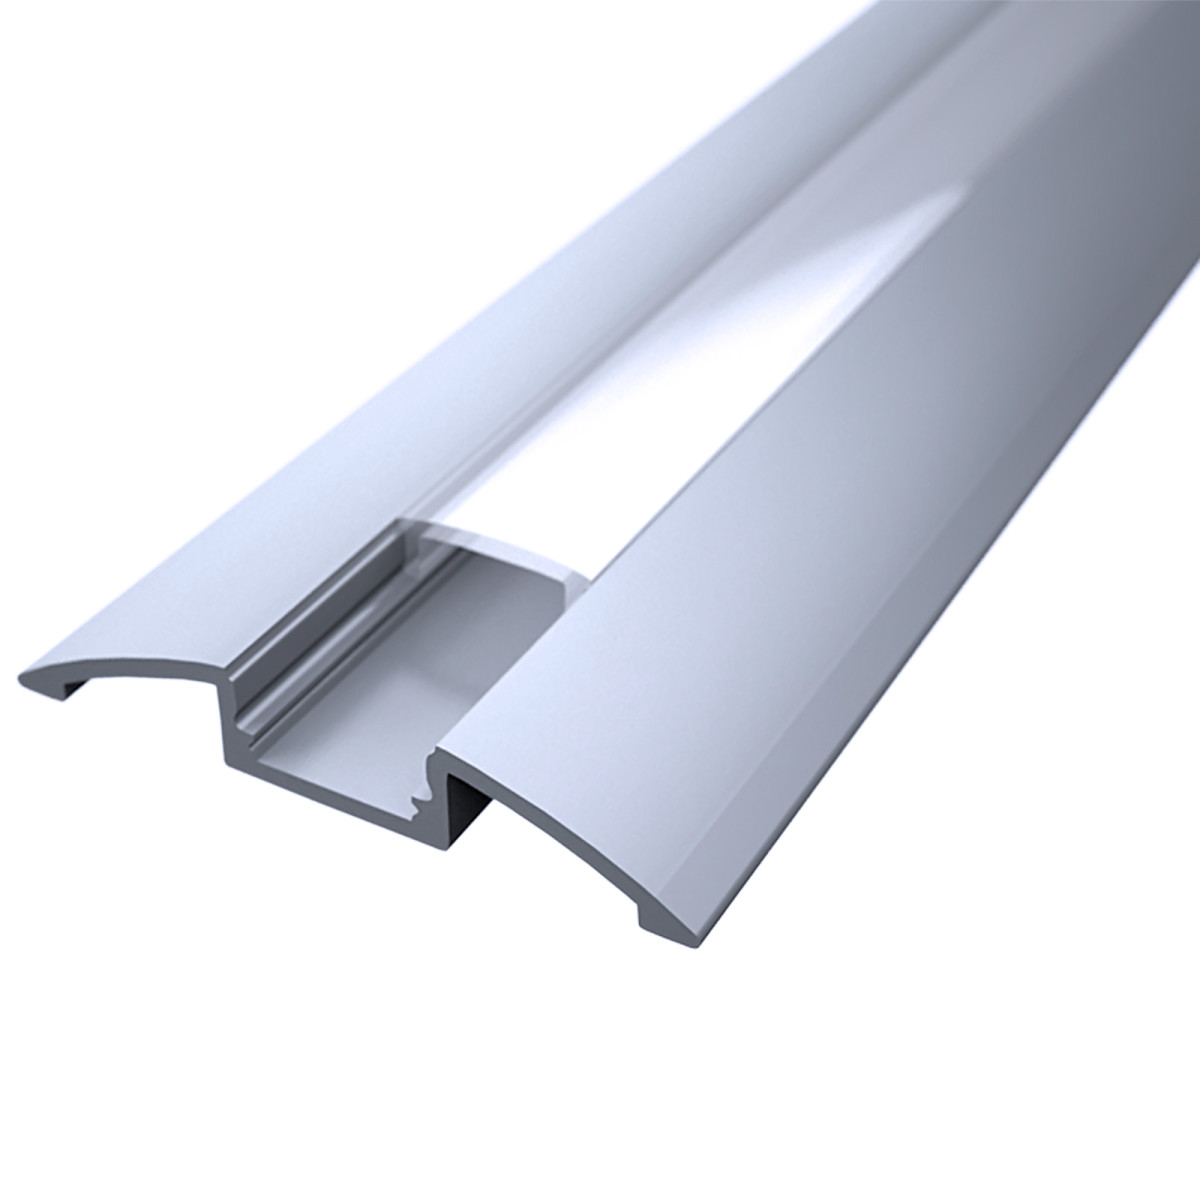 LED Flachprofil "Design-Line" | Abdeckung transparent | Zuschnitt auf 44cm |